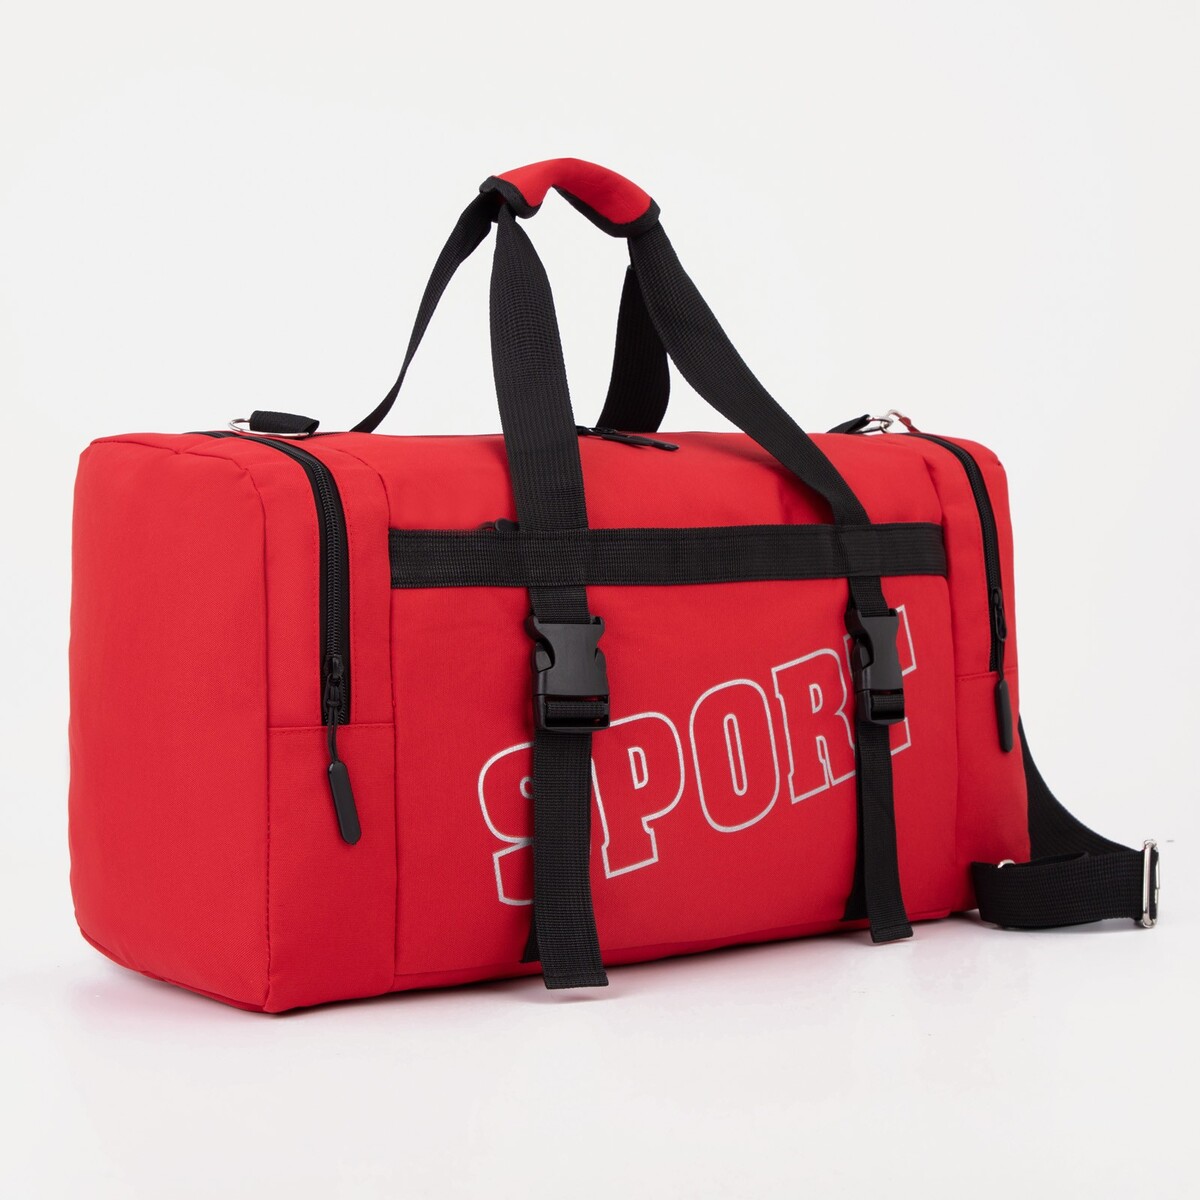 Сумка спортивная на молнии, 2 наружных кармана, цвет красный сумка спортивная на молнии 2 наружных кармана красный